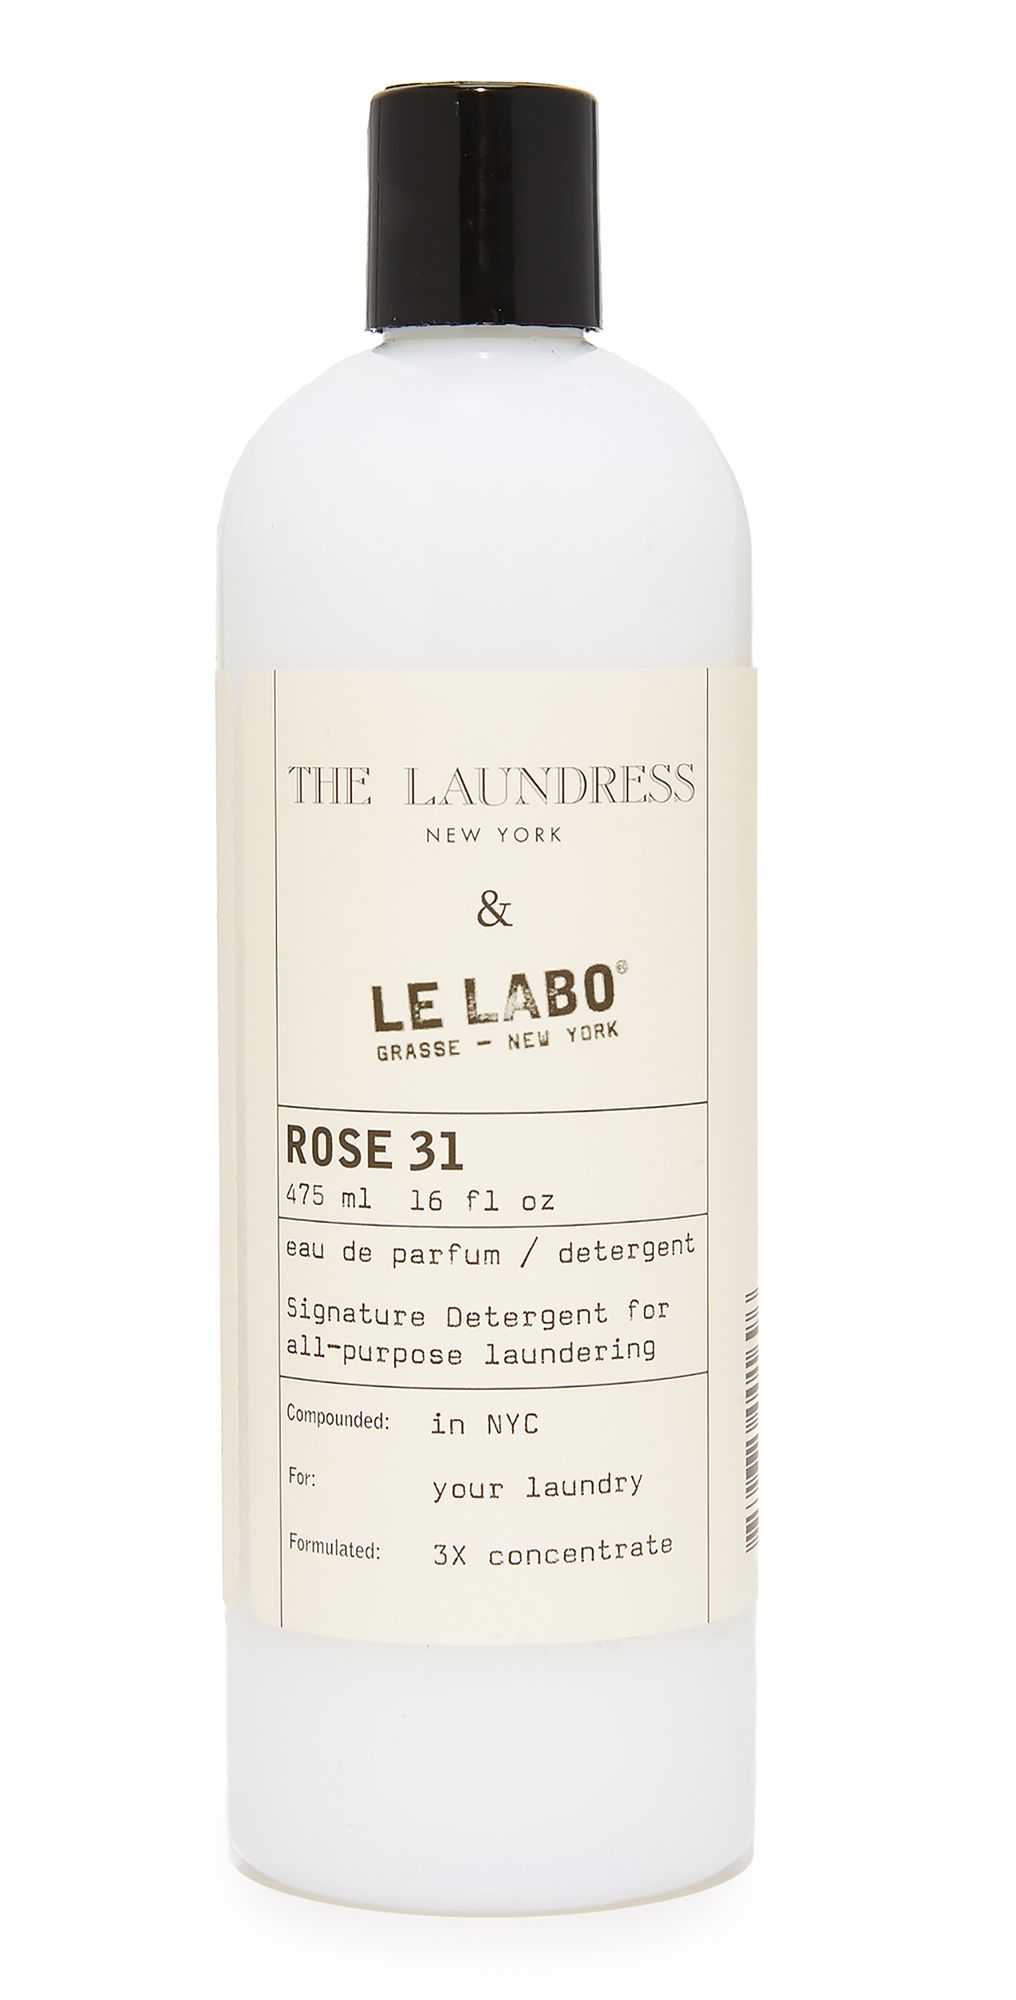 The Laundress Le Labo Rose 31 Signature Detergent | Shopbop